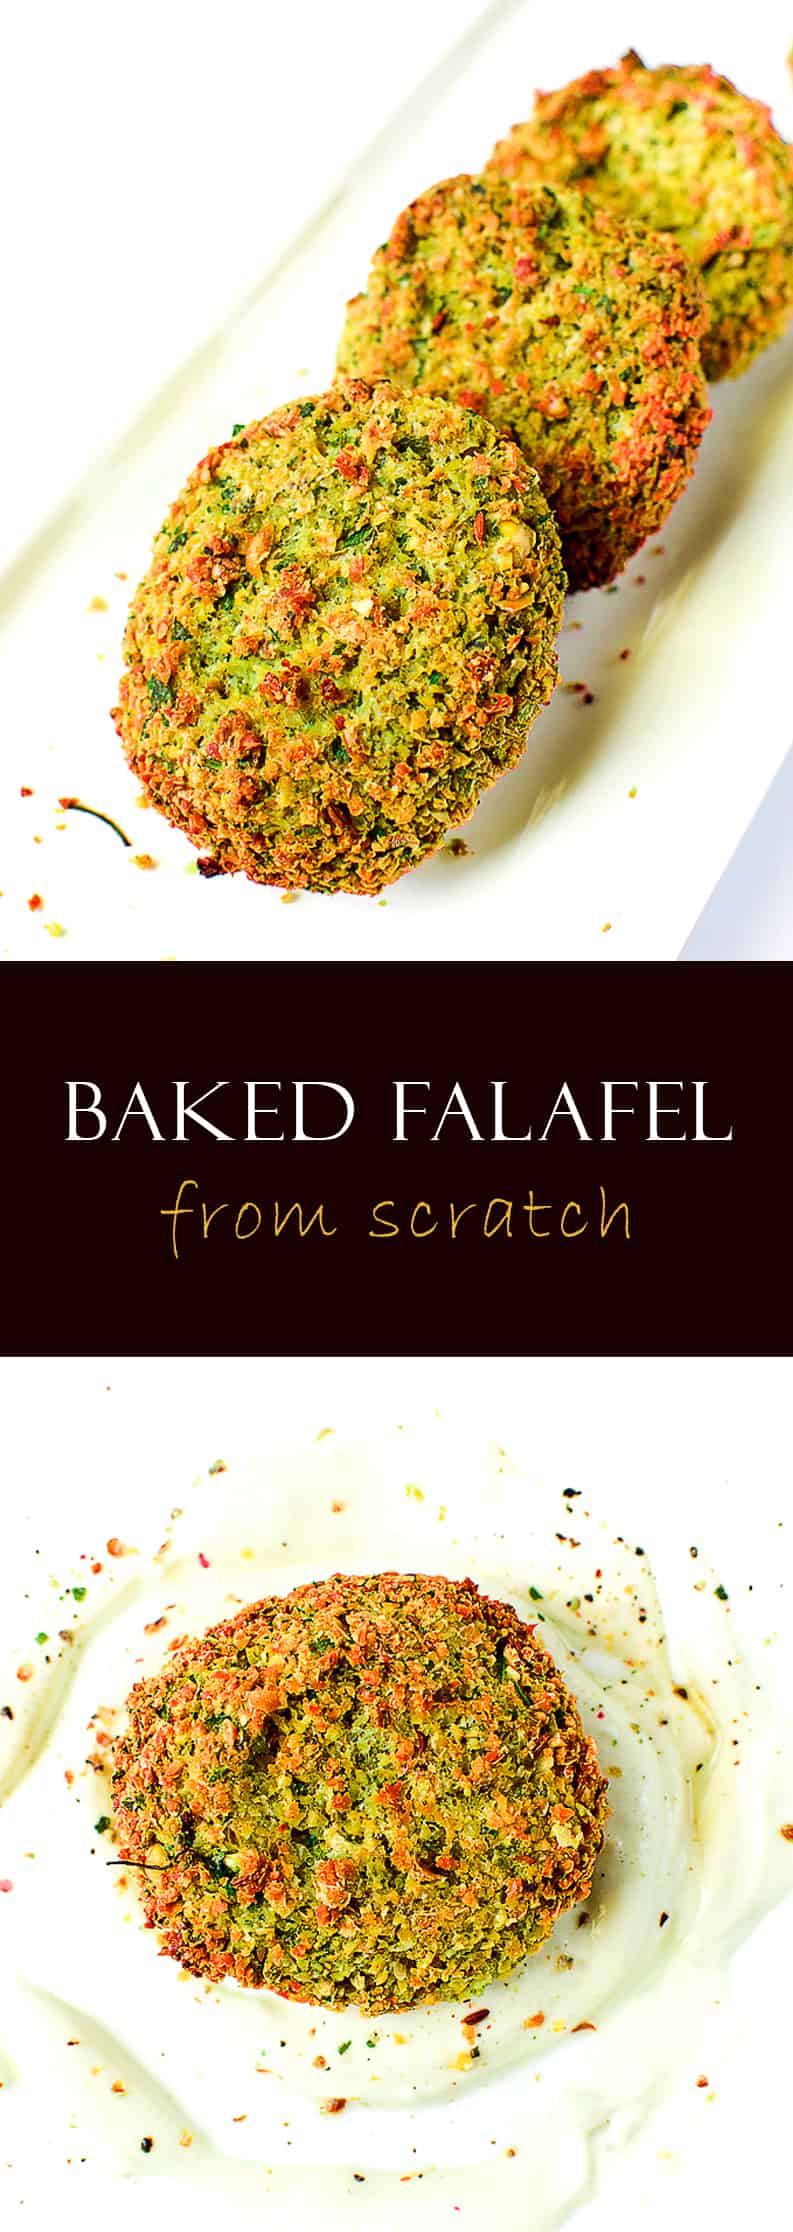 Baked falafel